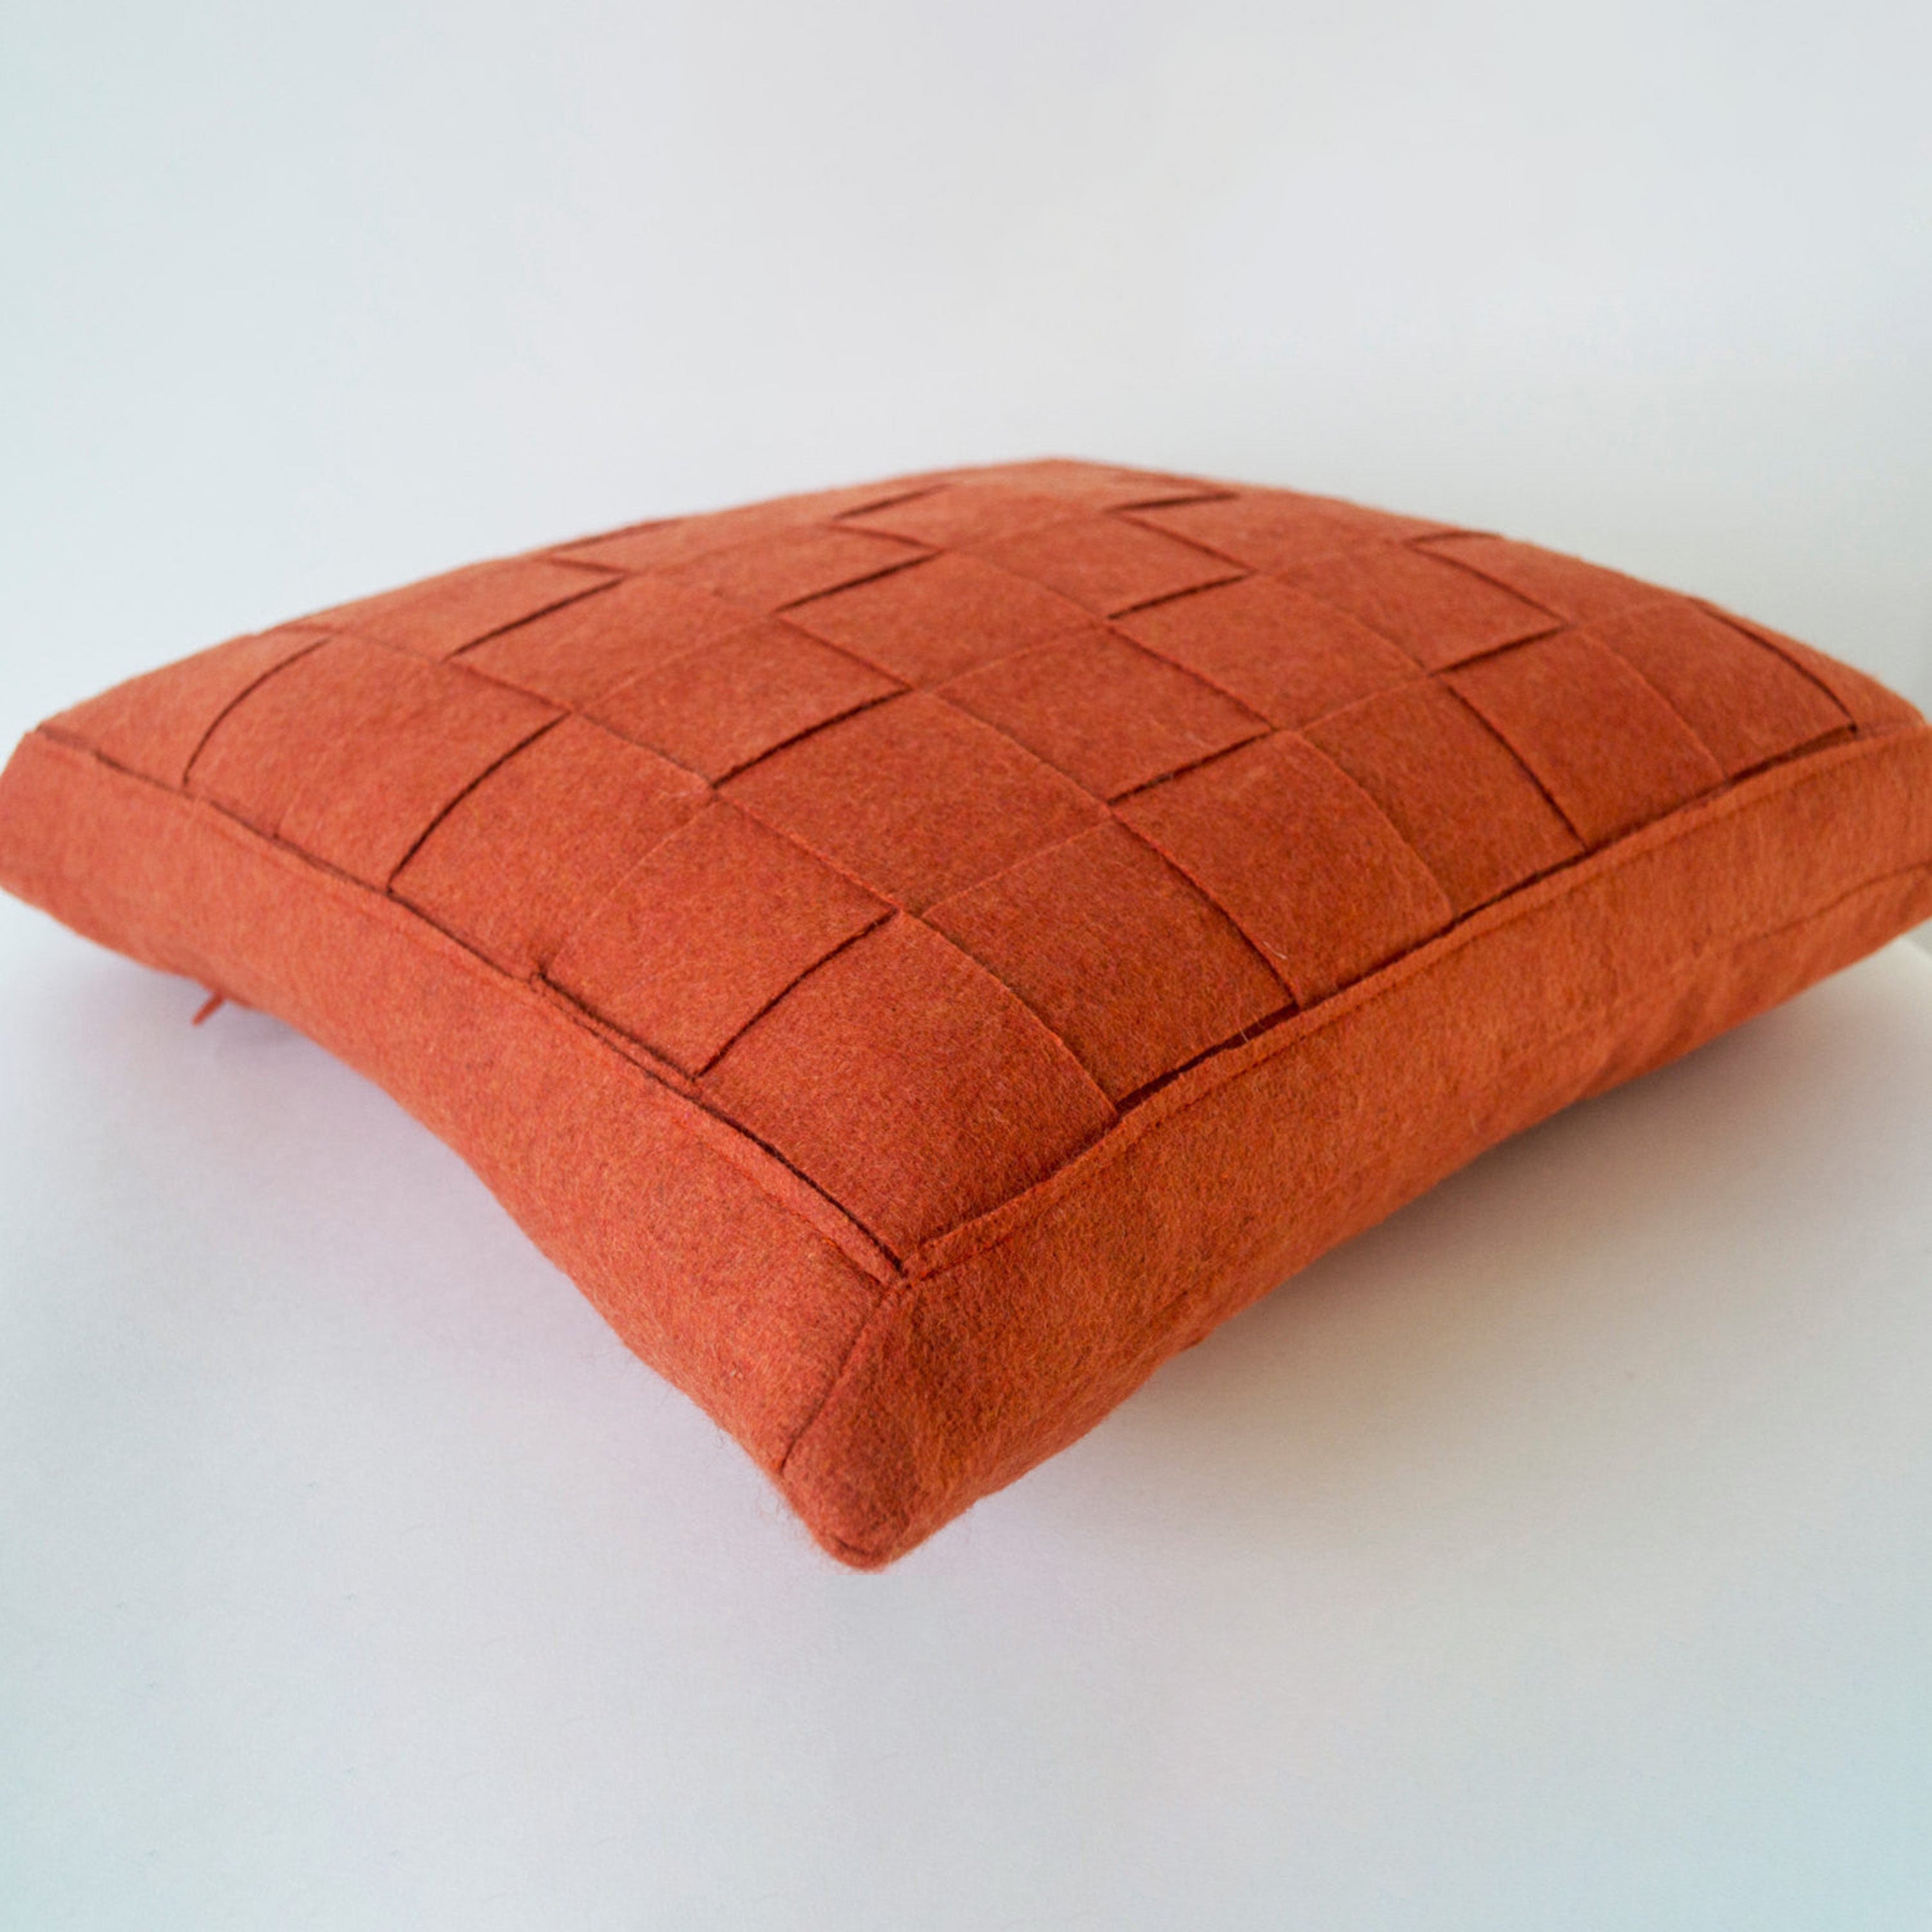 Orange Pillow - Felt Weave Pillows -Throw Pillow- Decorative Pillow- Gift- 16x16 -Square Pillow -Modern decor -Chair Pillow -Wool Mat pillow